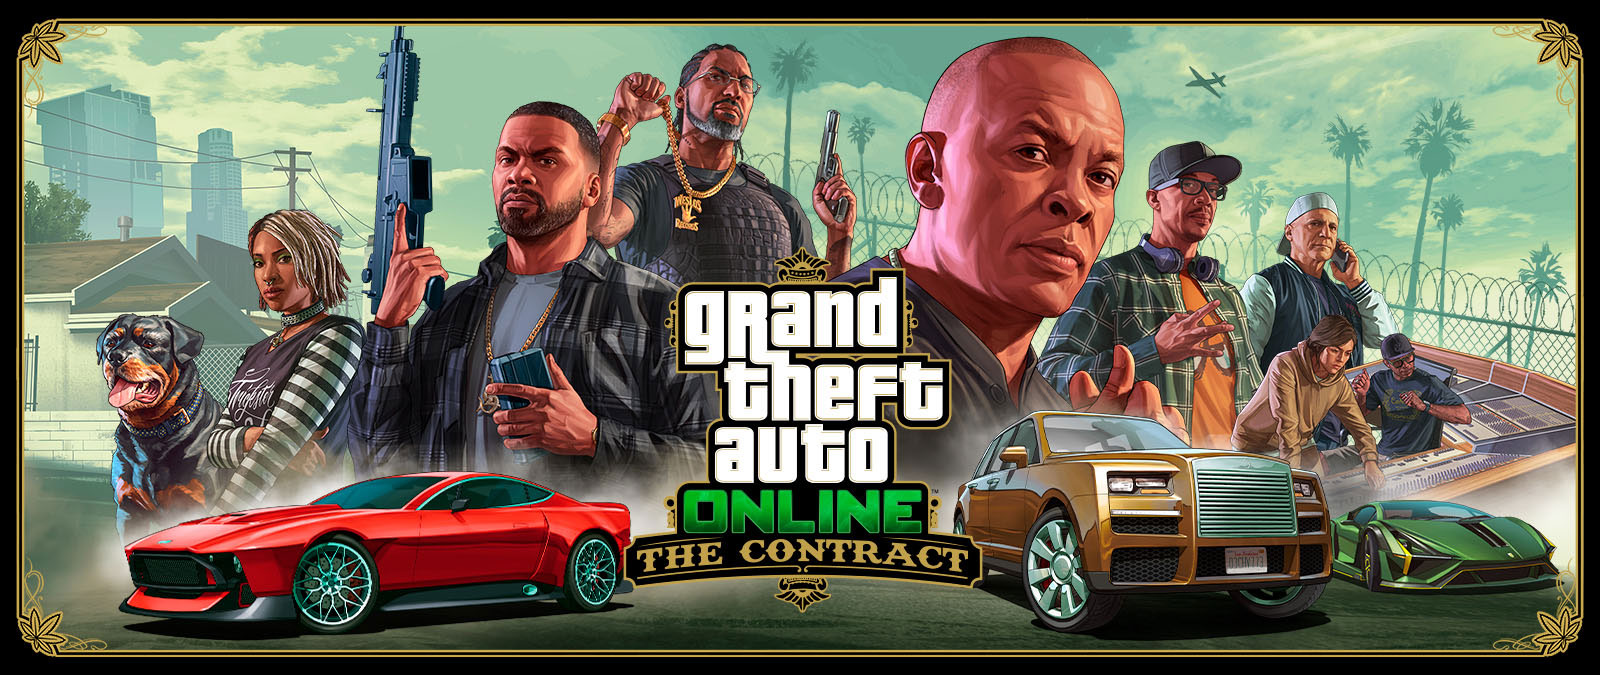 Grand Theft Auto Online, The Contract, Franklin, seitsemän muuta ystävää ja Chop-koira ovat kolmen eksoottisen auton takana. 